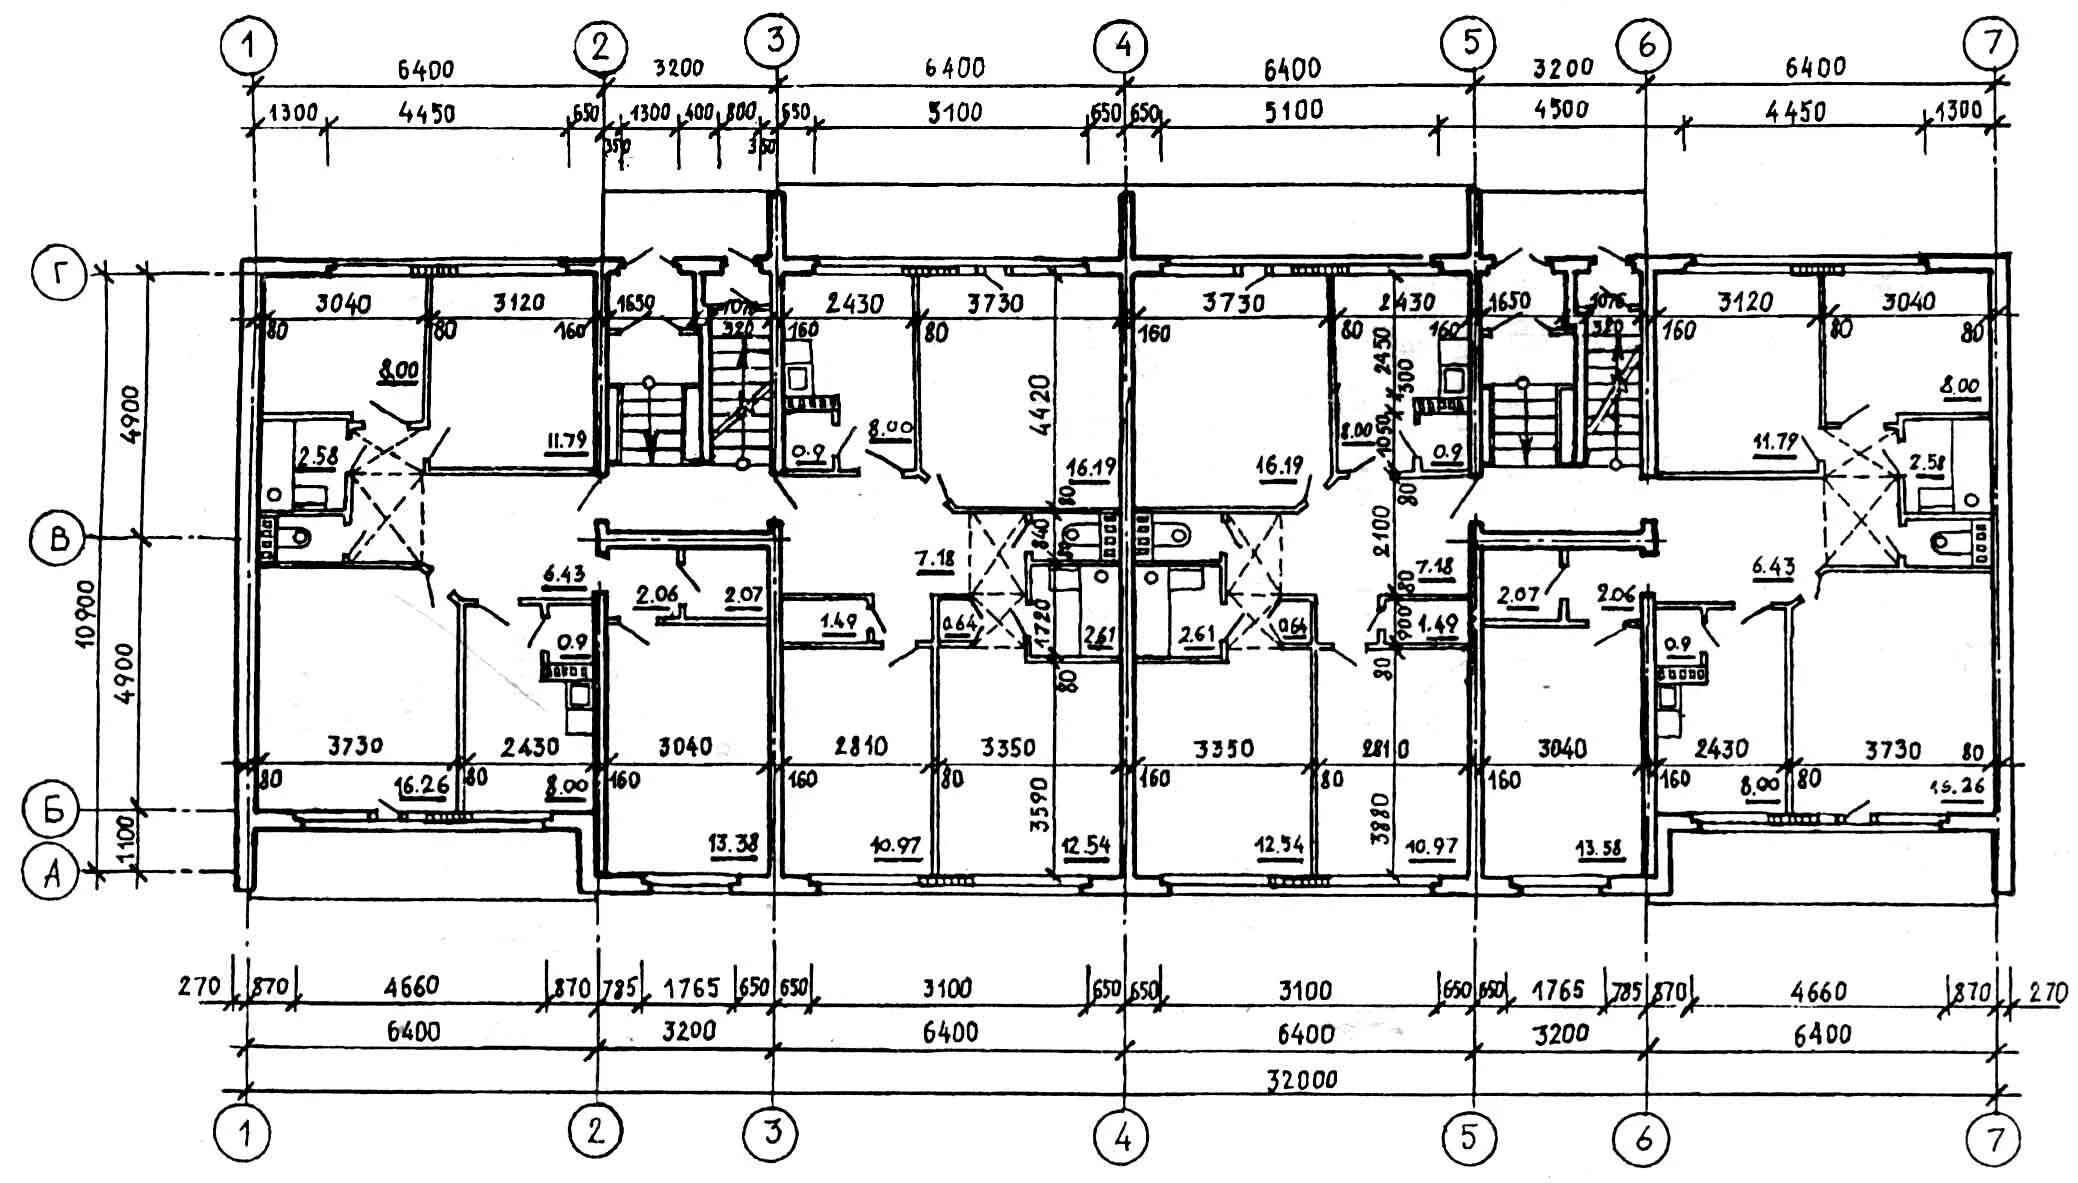 Схема 9 этажного панельного дома. План первого этажа панельного дома. Типовой проект 9 этажного панельного дома. Типовые планировки панельных домов 10 этажей.